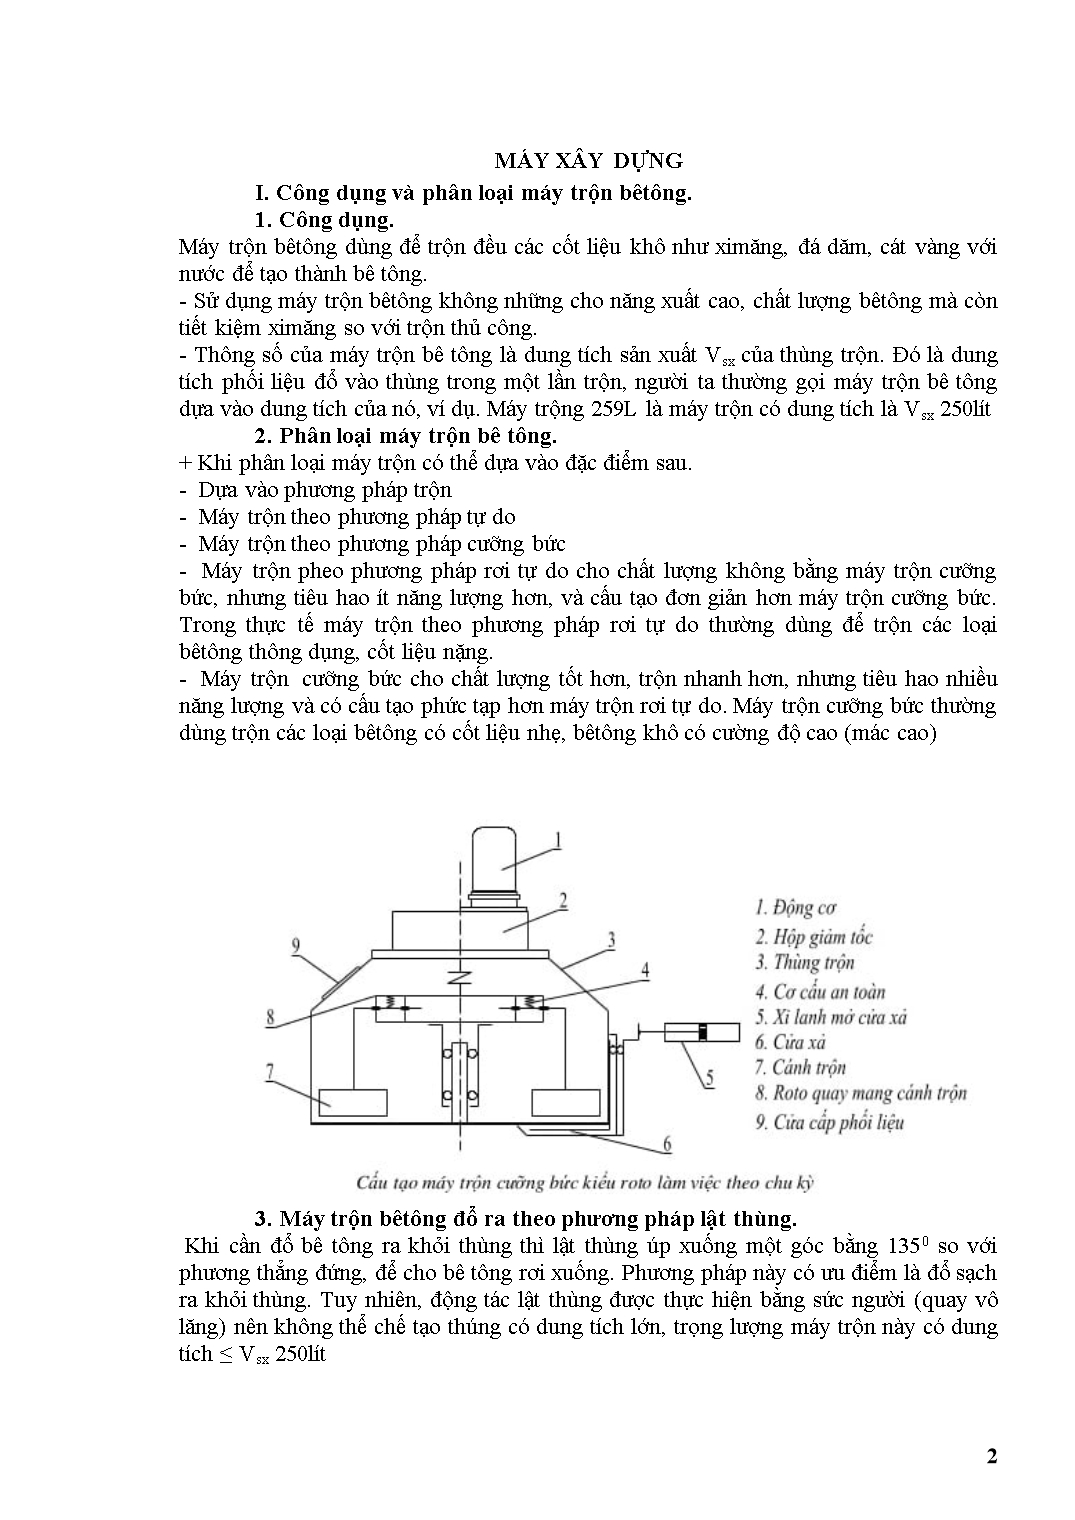 Giáo trình Máy xây dựng - Nguyễn Mạnh Tường trang 2